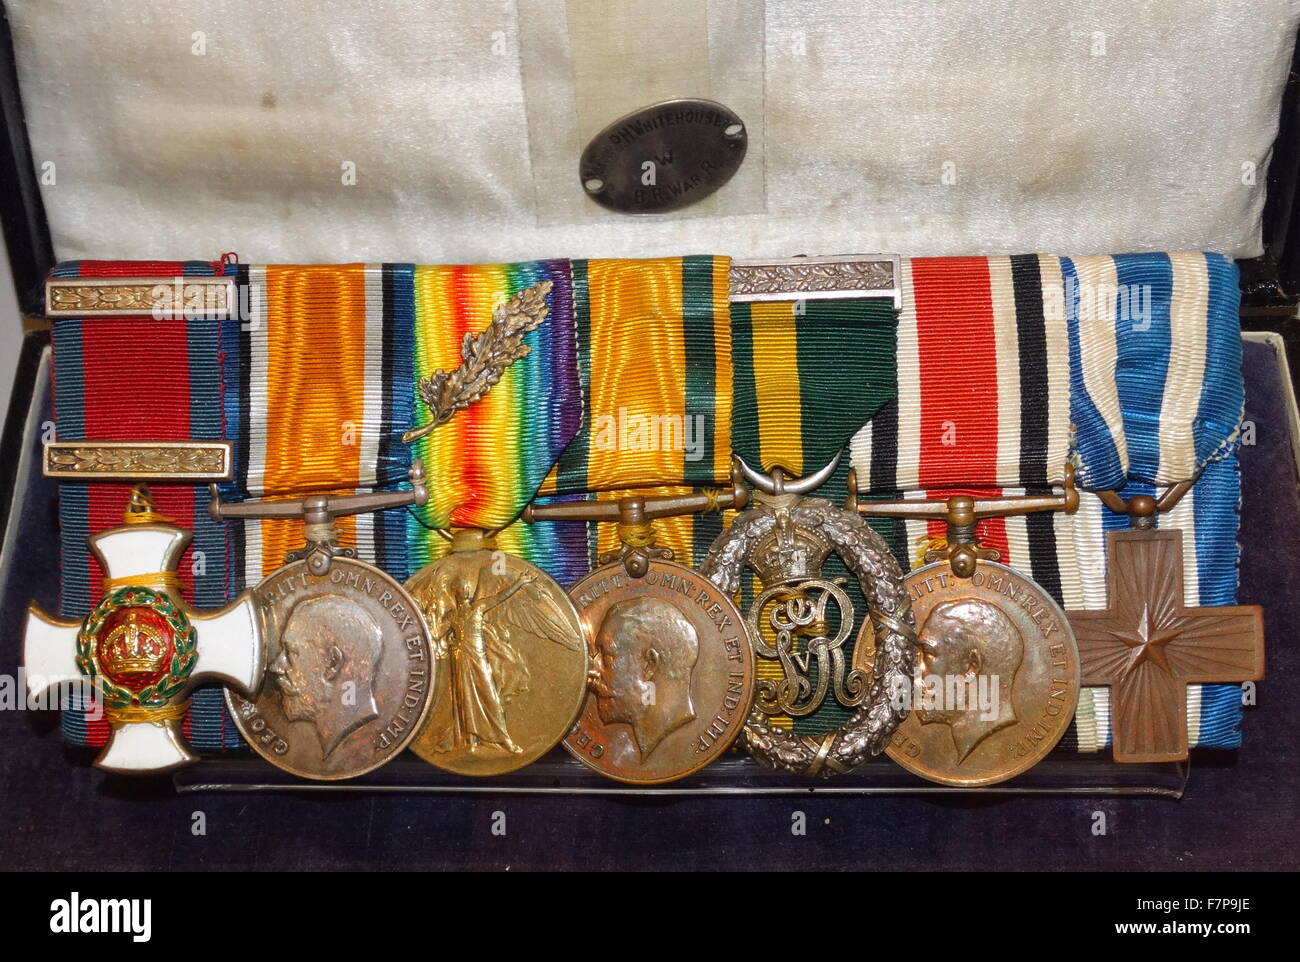 Juego De Medalla 200 Años Ingenieros Militares - Granados y Condecoraciones